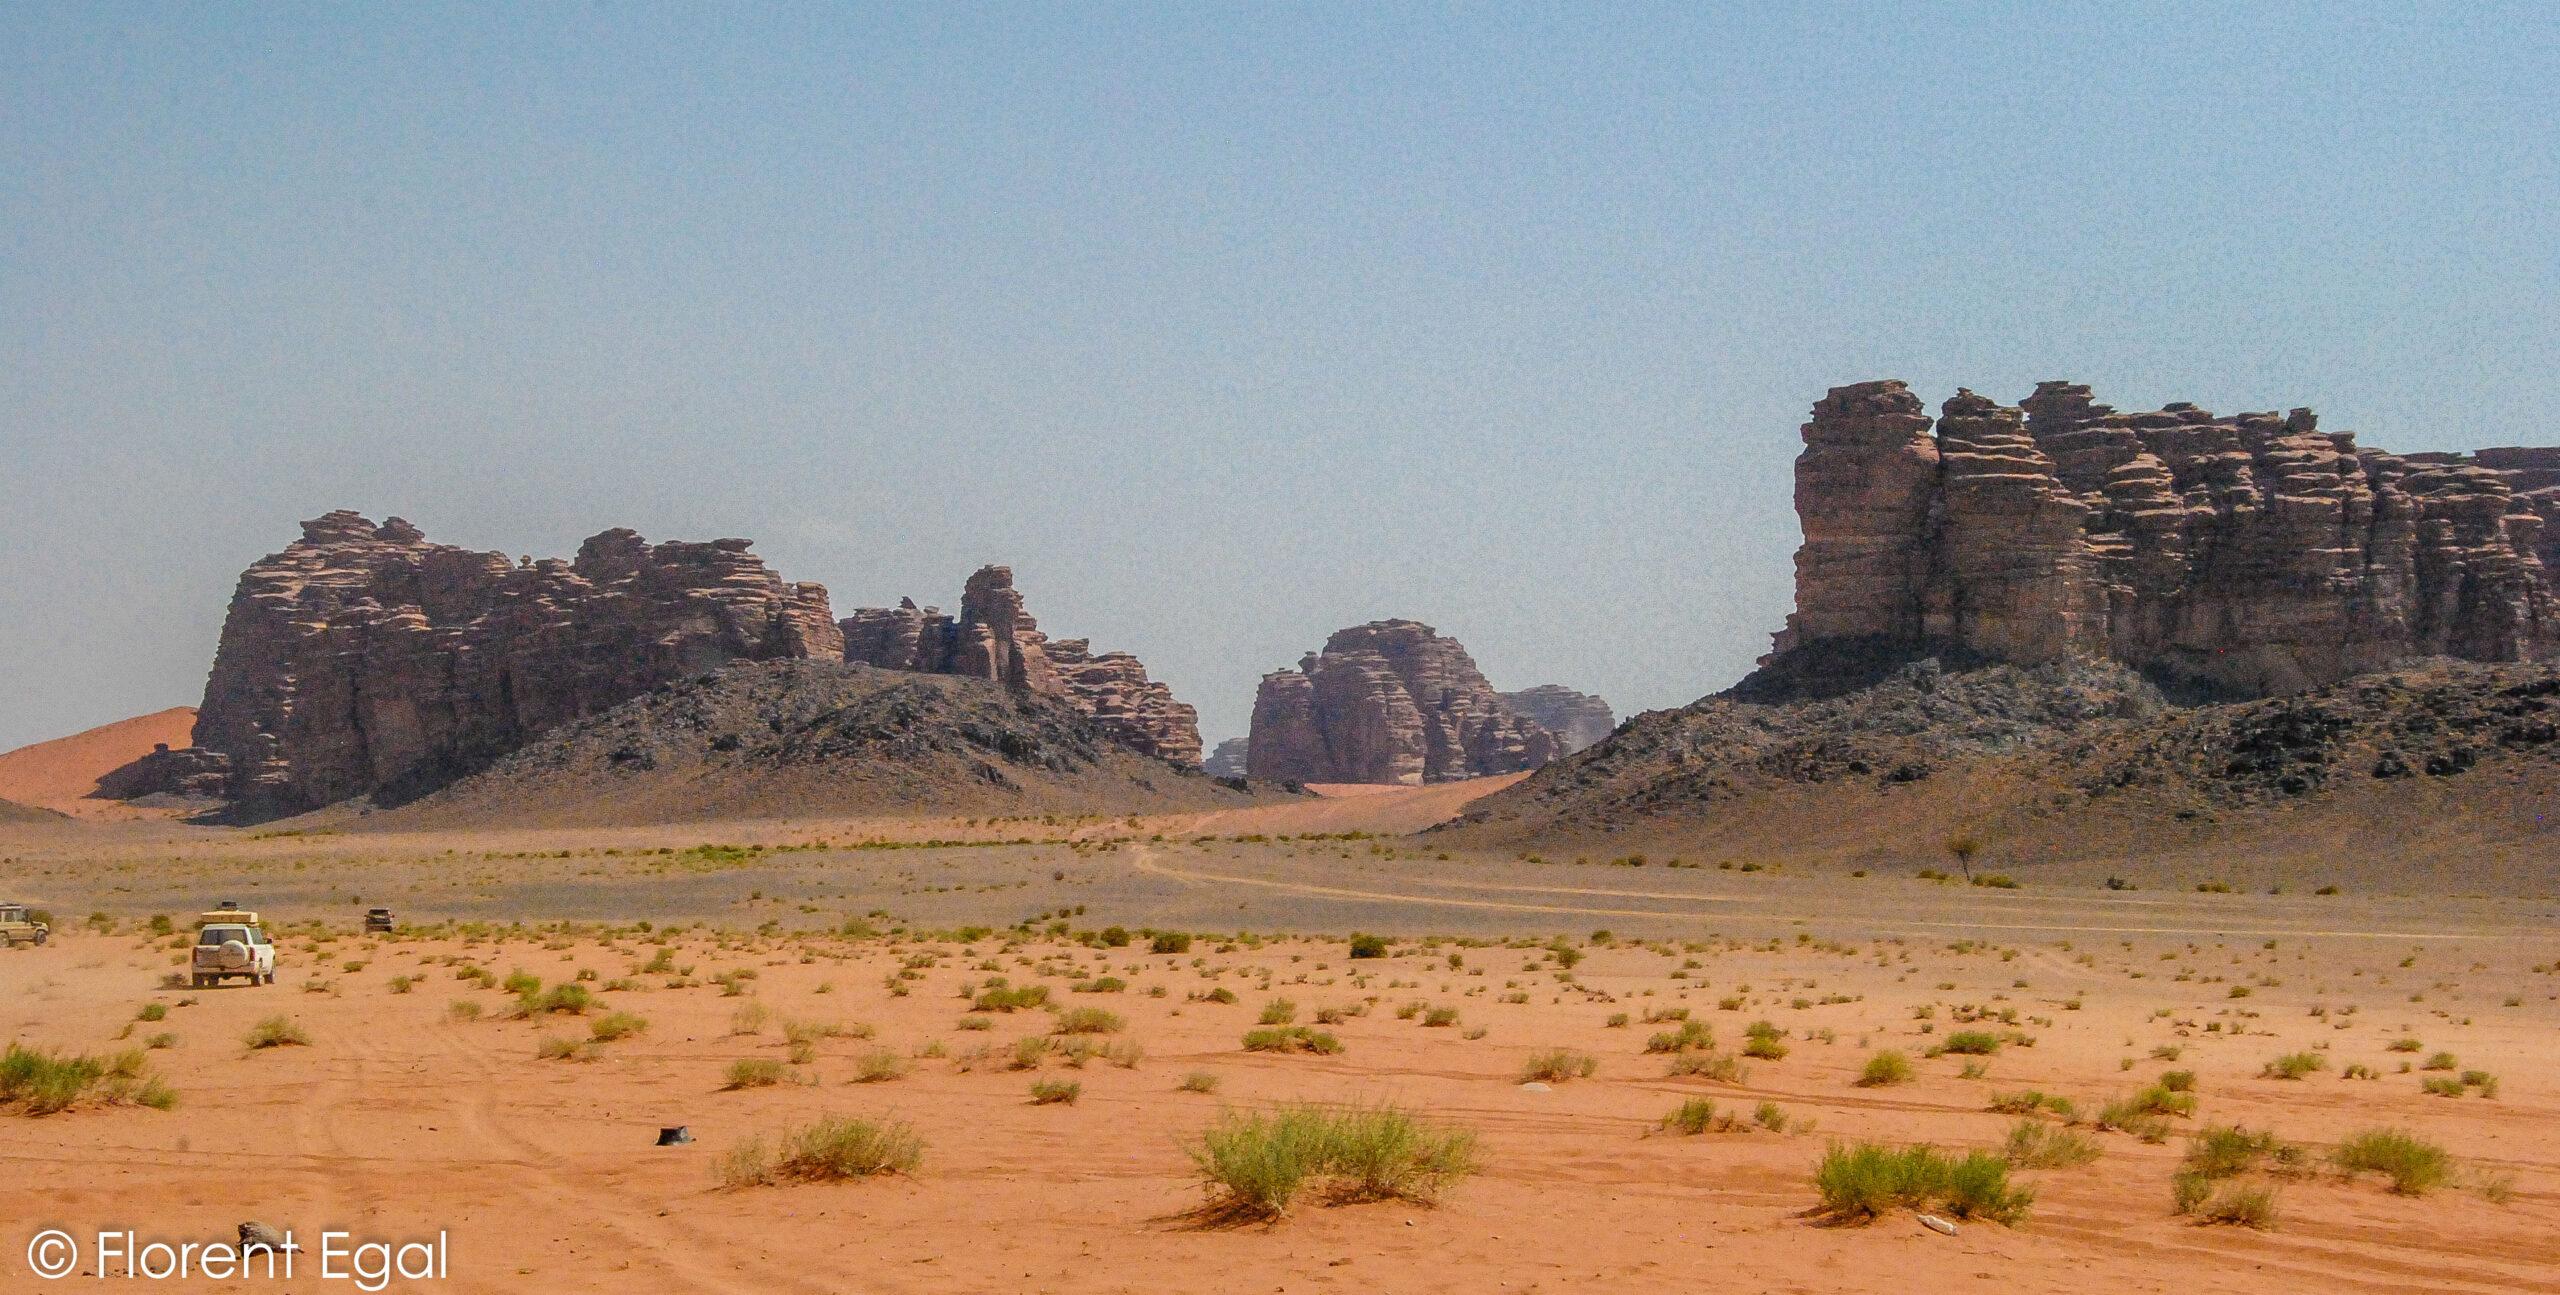 Саудовская Аравия: что посмотреть и чего ожидать в стране пустыни и скал?